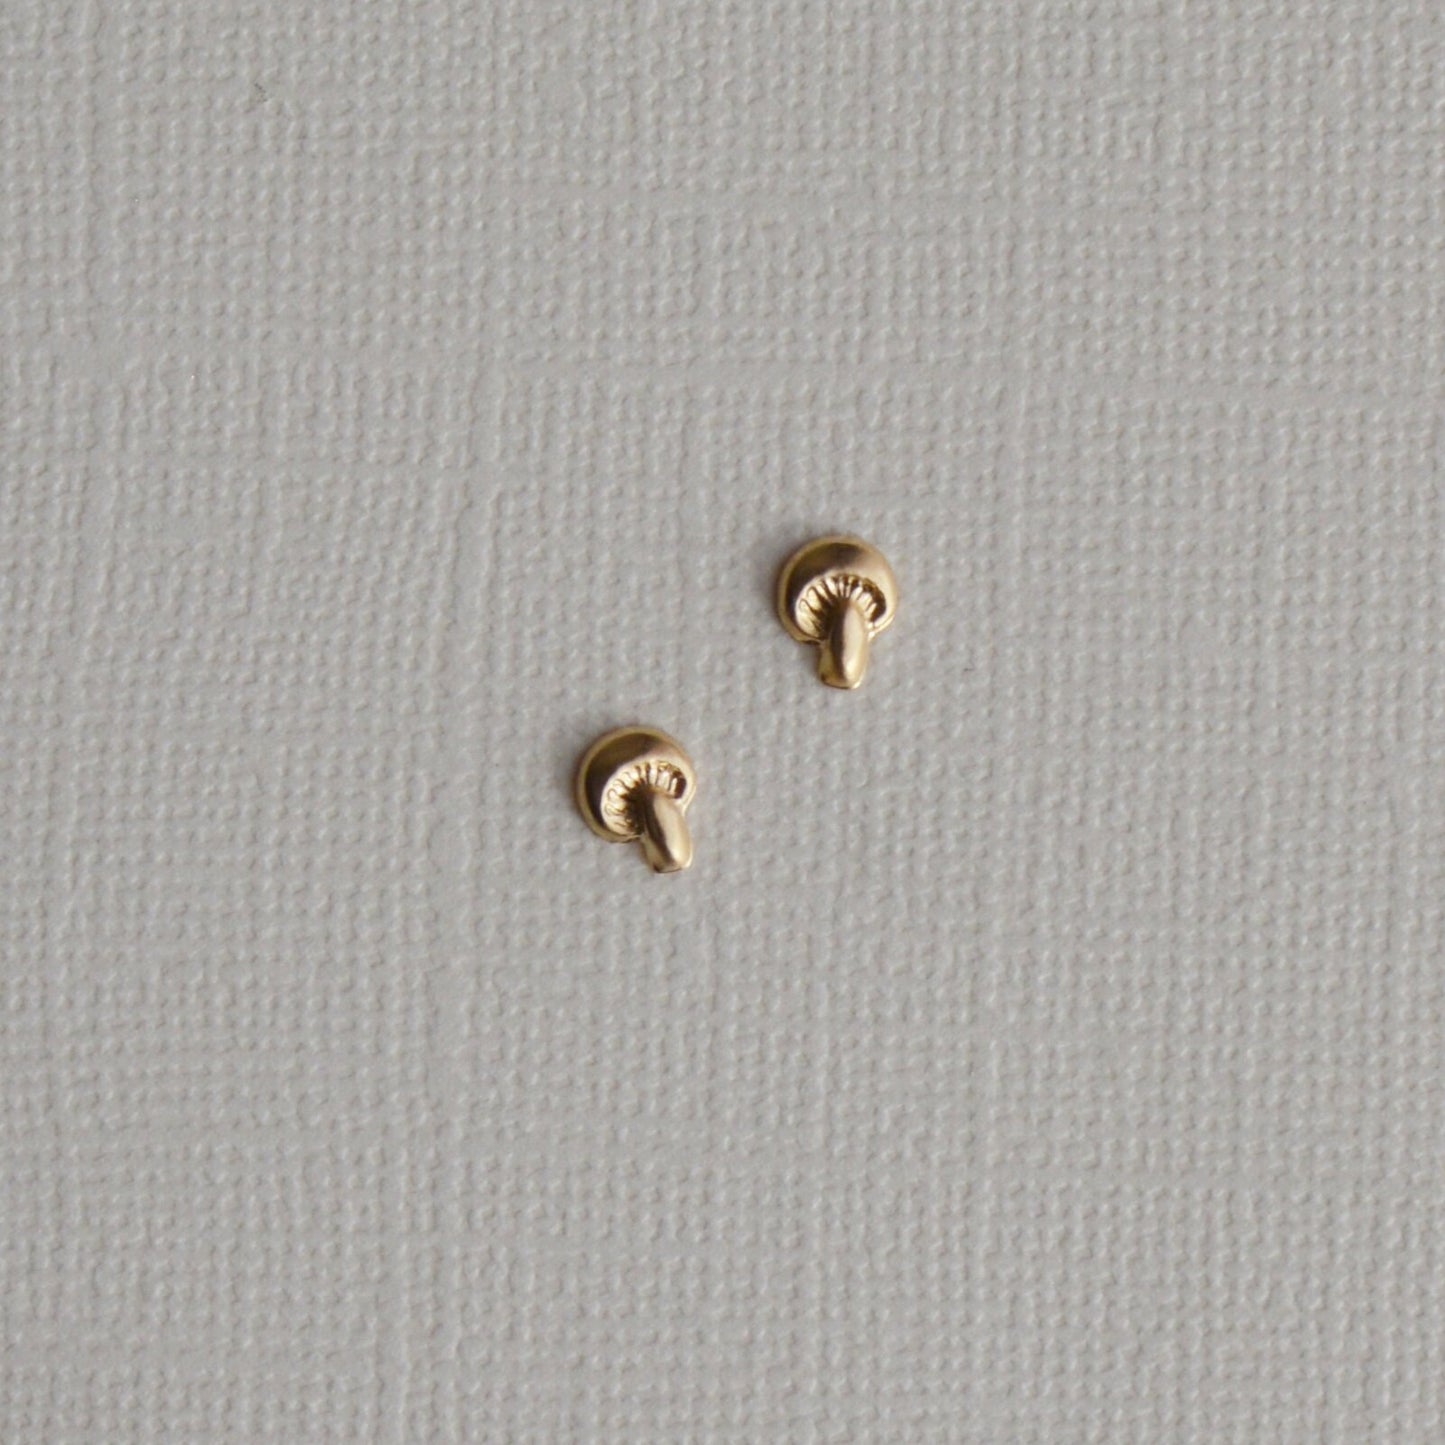 gold mushroom stud earrings